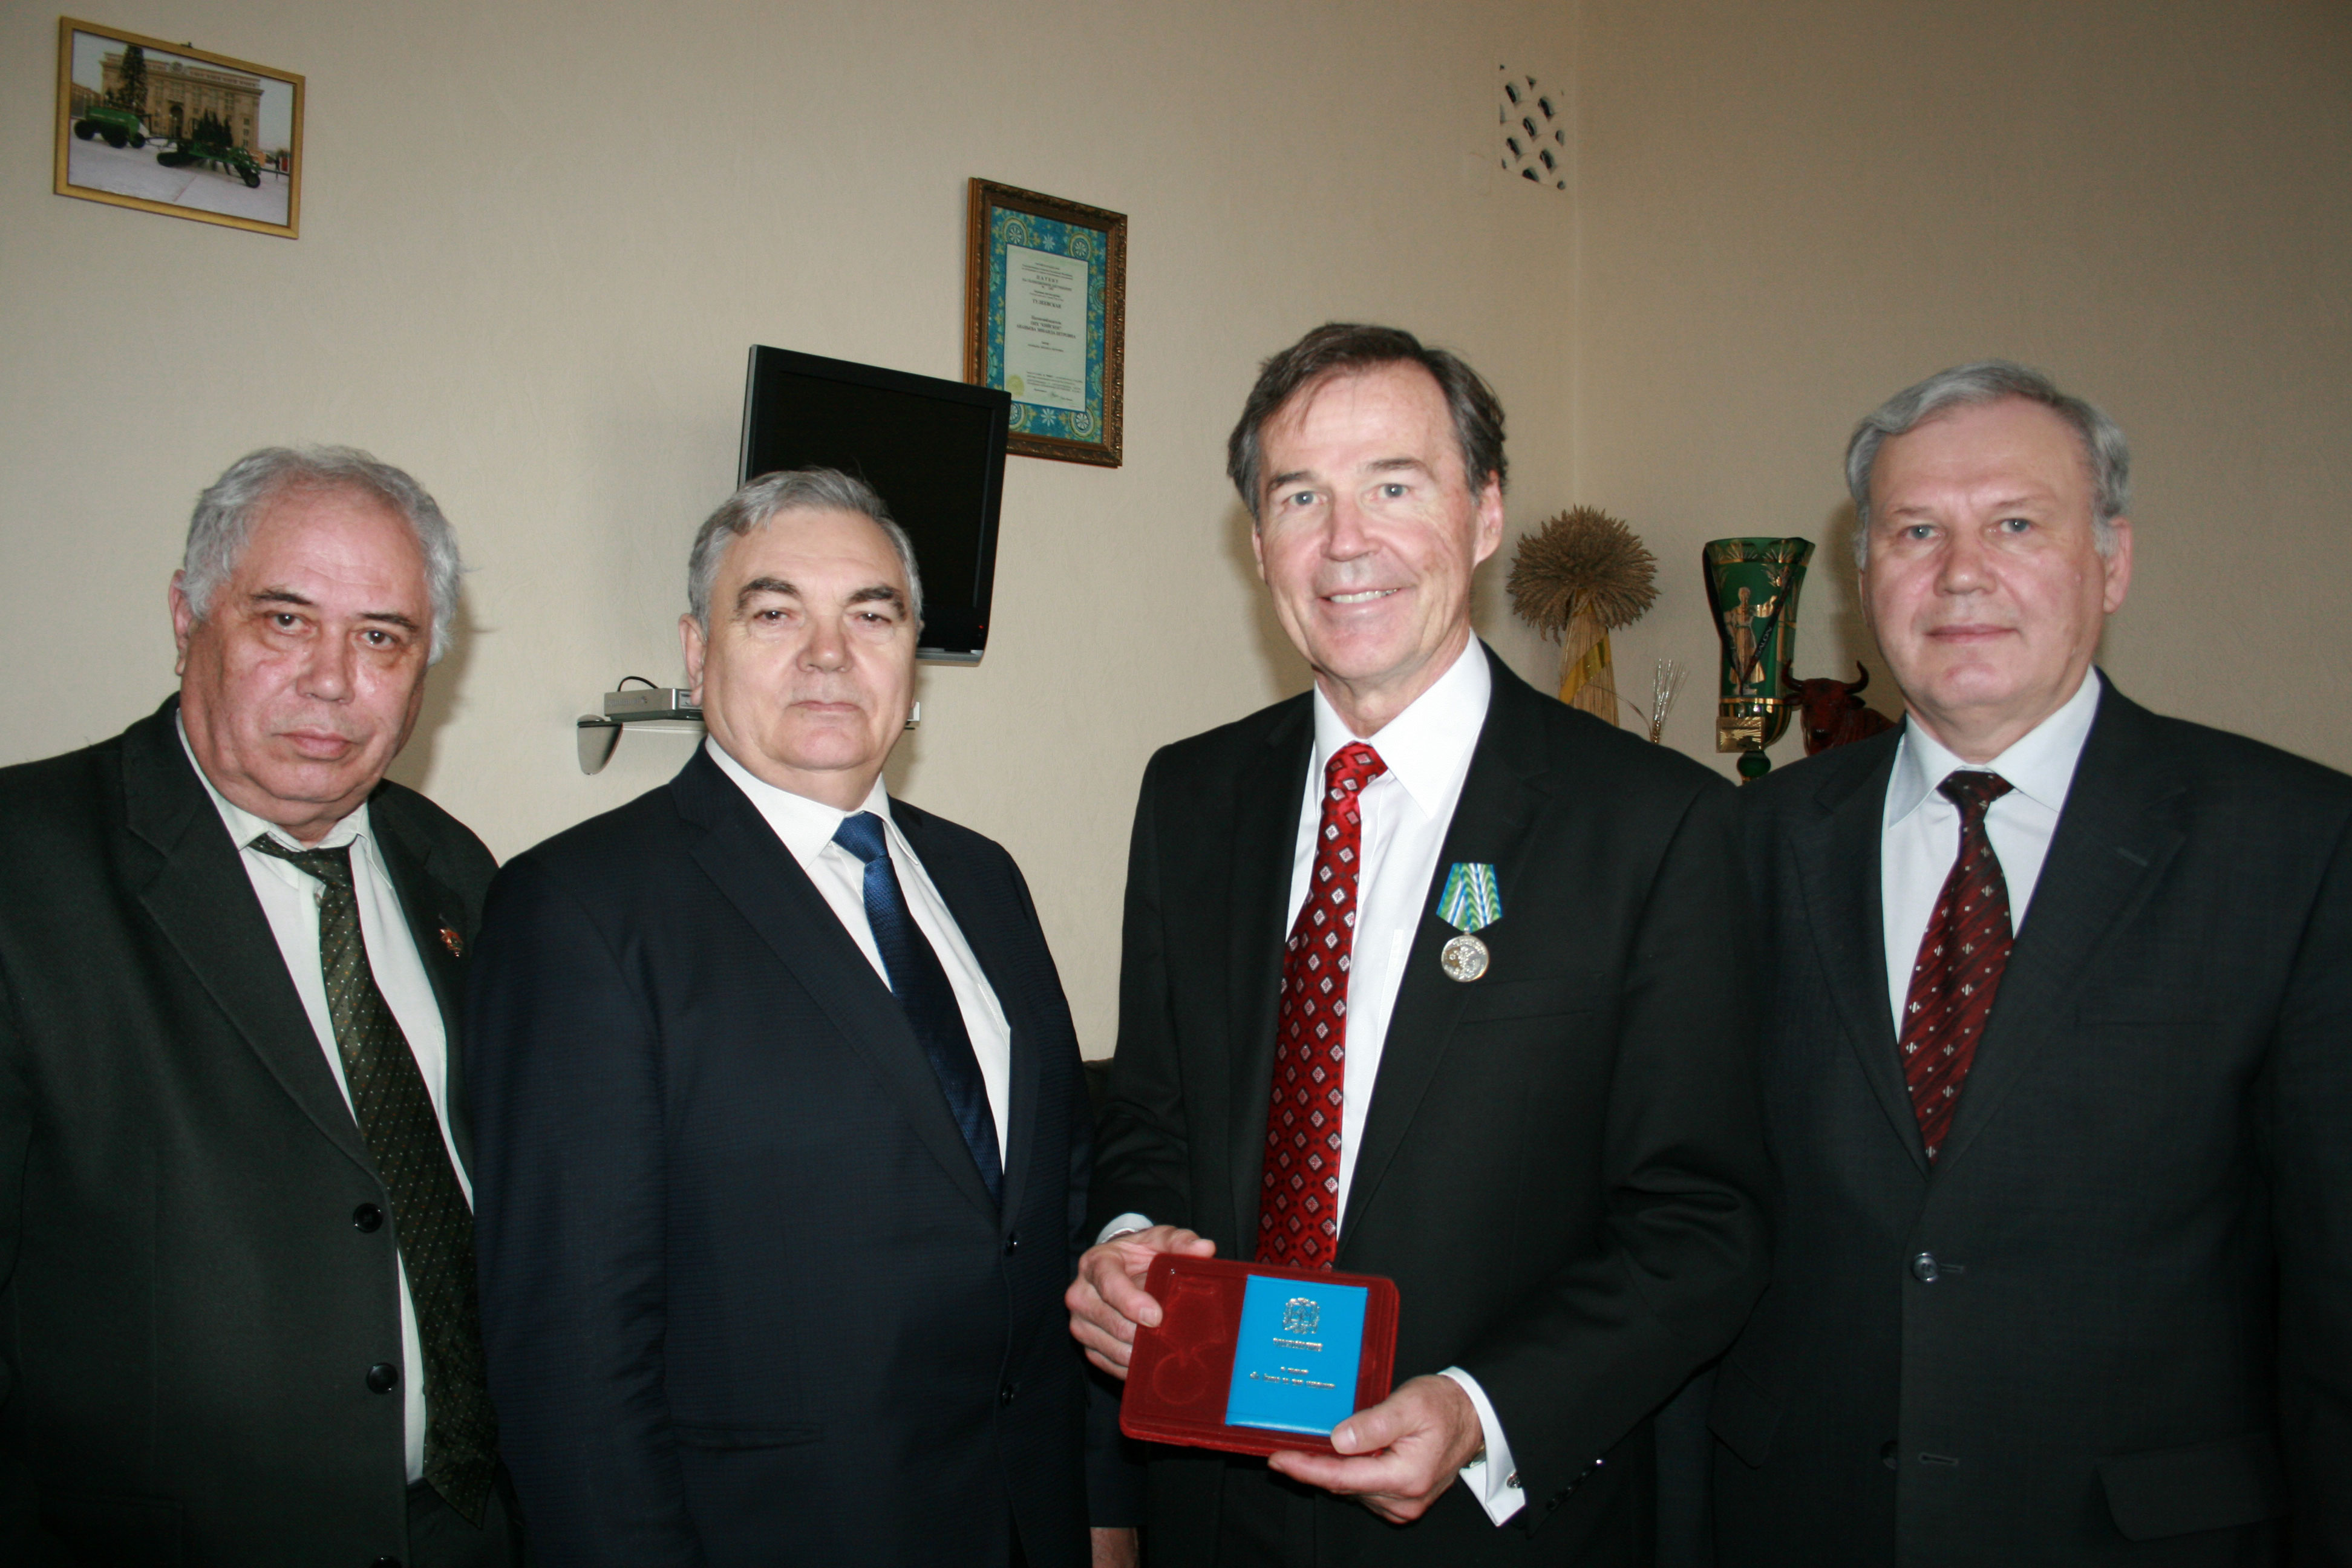 Кузбасская медаль “За бизснес во имя созидания” была вручена Ховарду Далл.